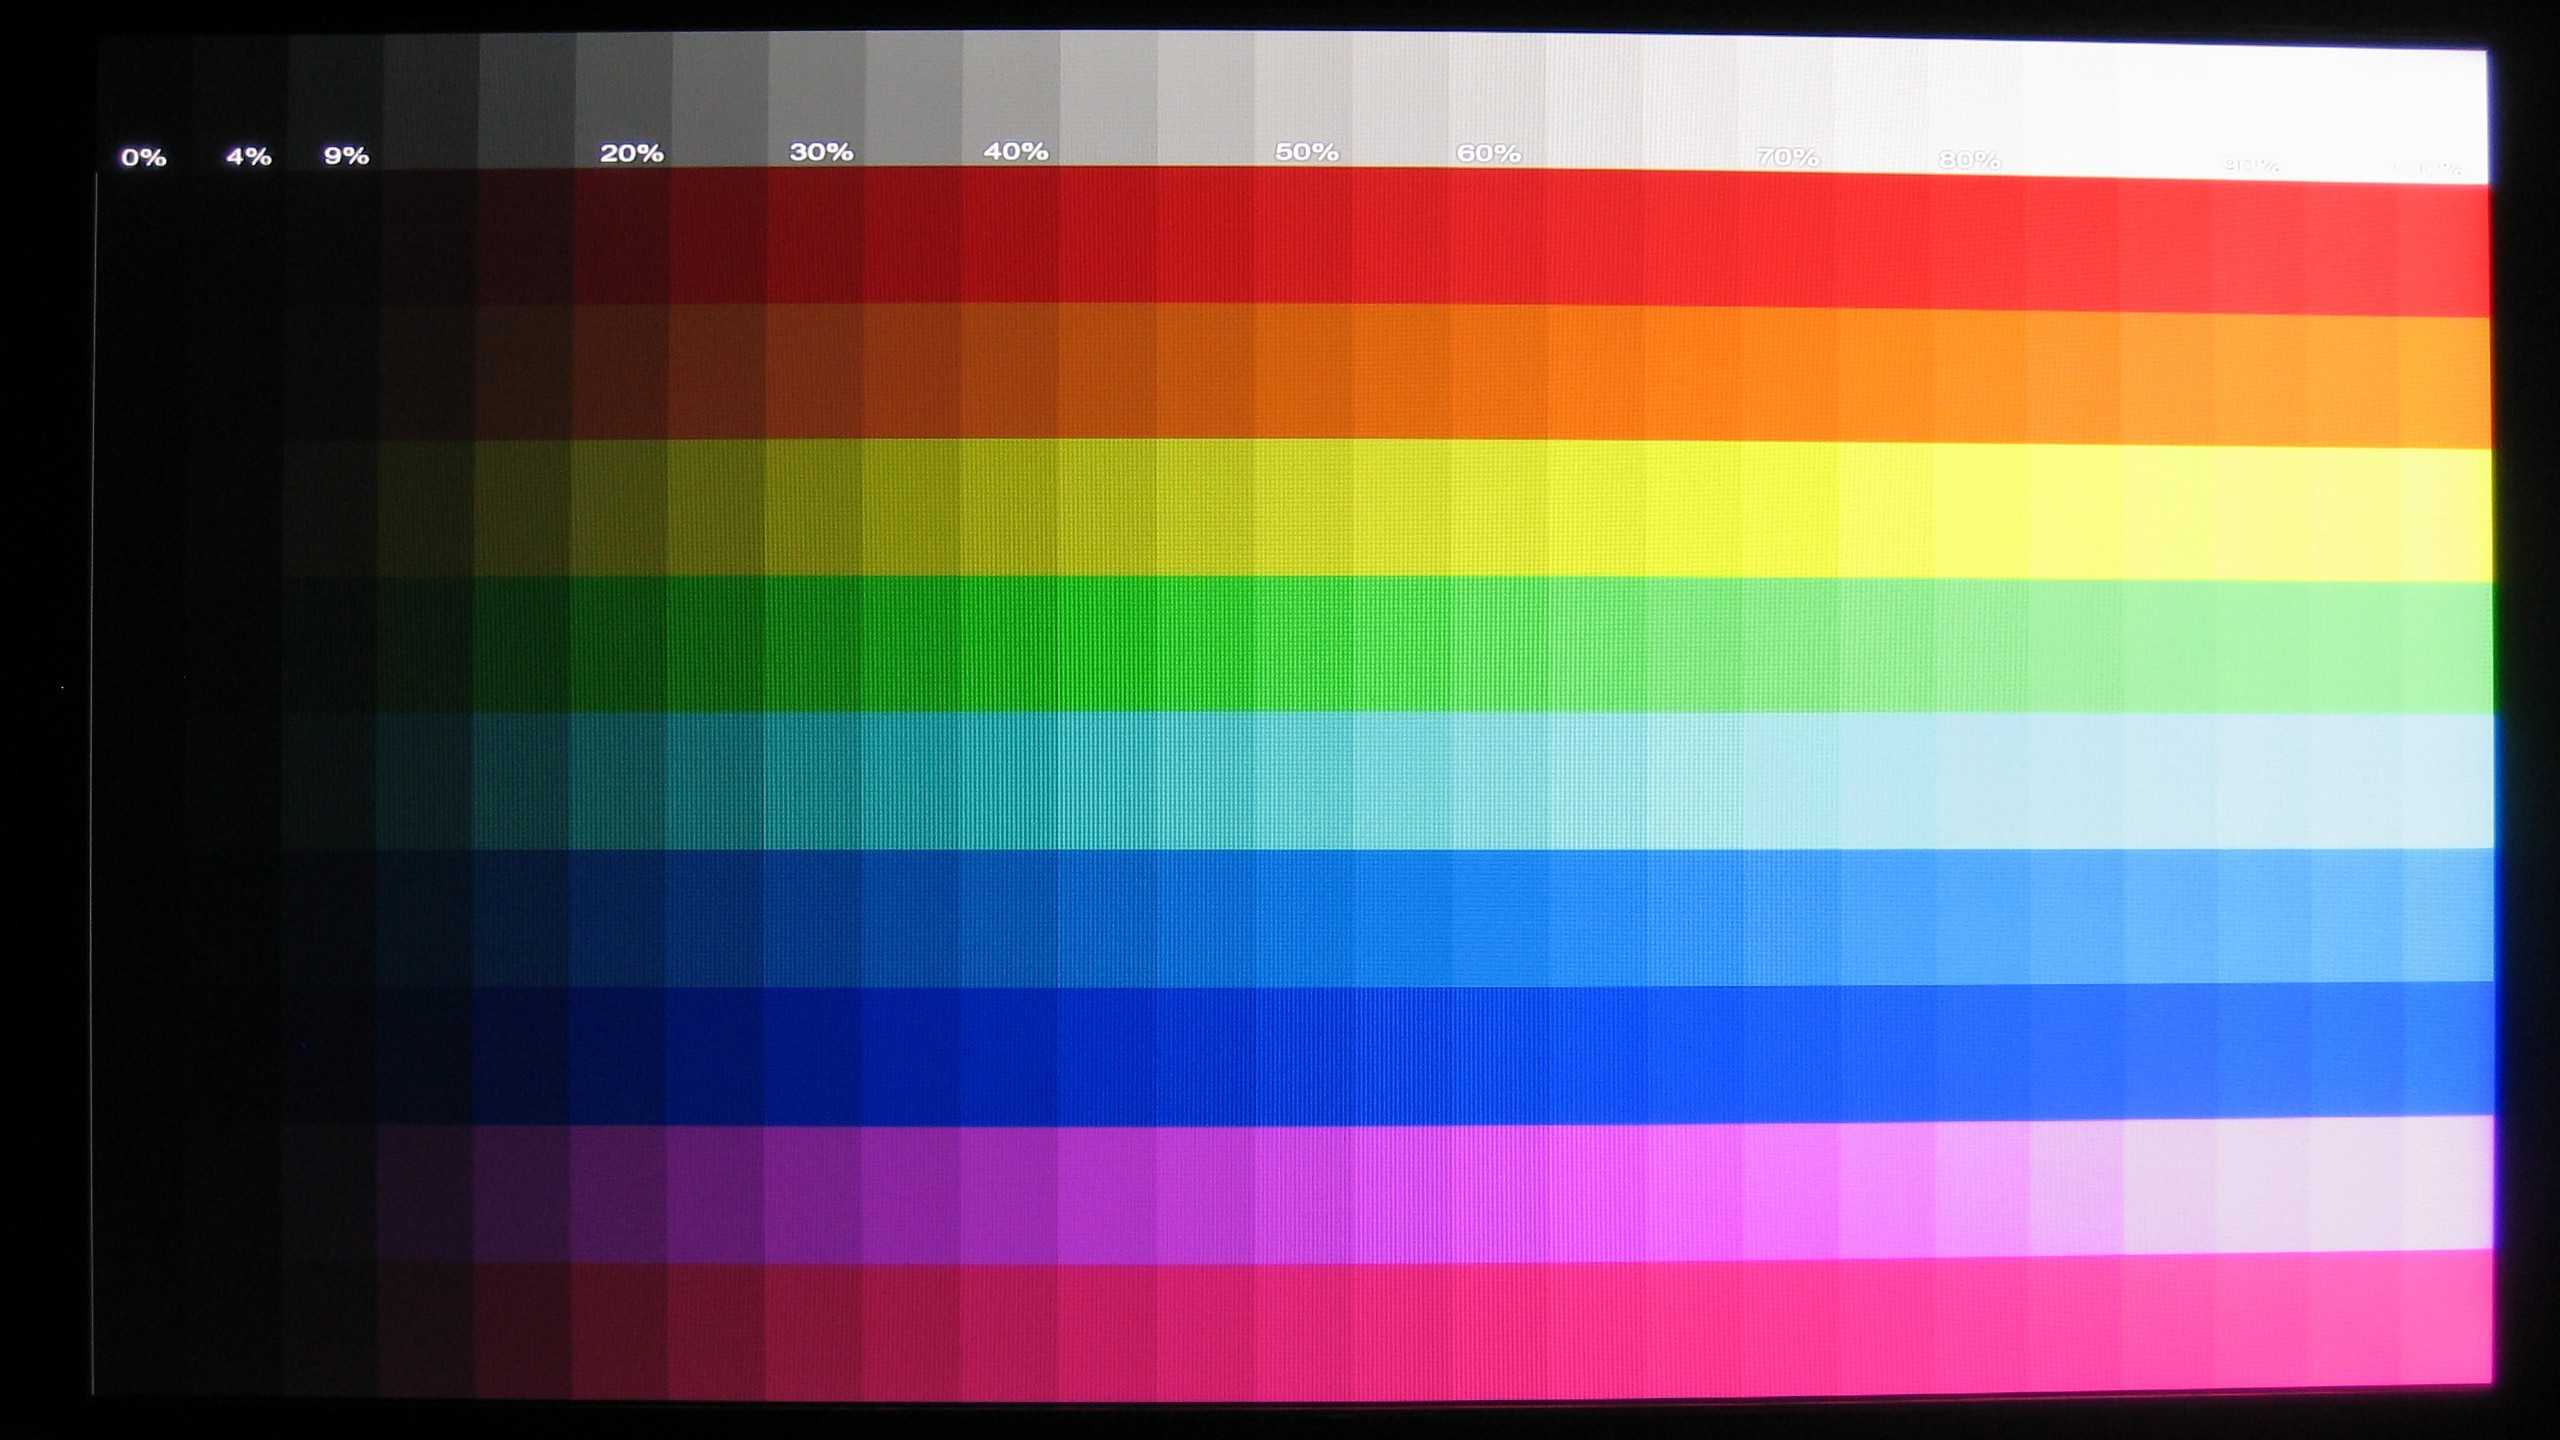 Цветовой профиль изображения - почему искажаются цвета - фотожурнал - фотошкола михаила панина